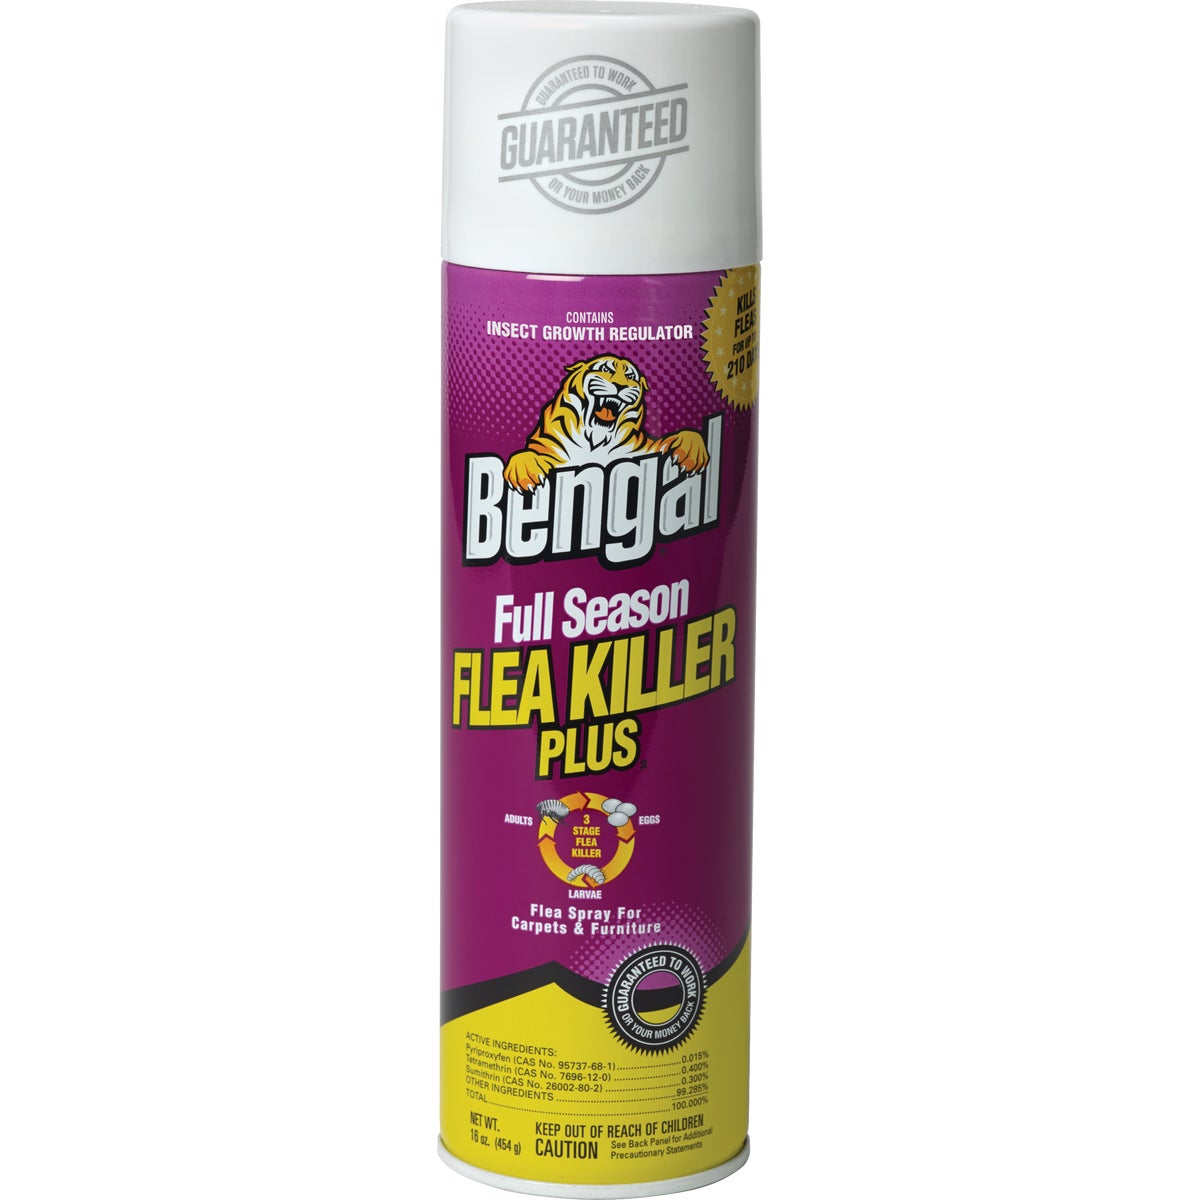 Bengal Flea Killer Plus 16 Oz. Aerosol Spray Full Season Tick & Flea Killer